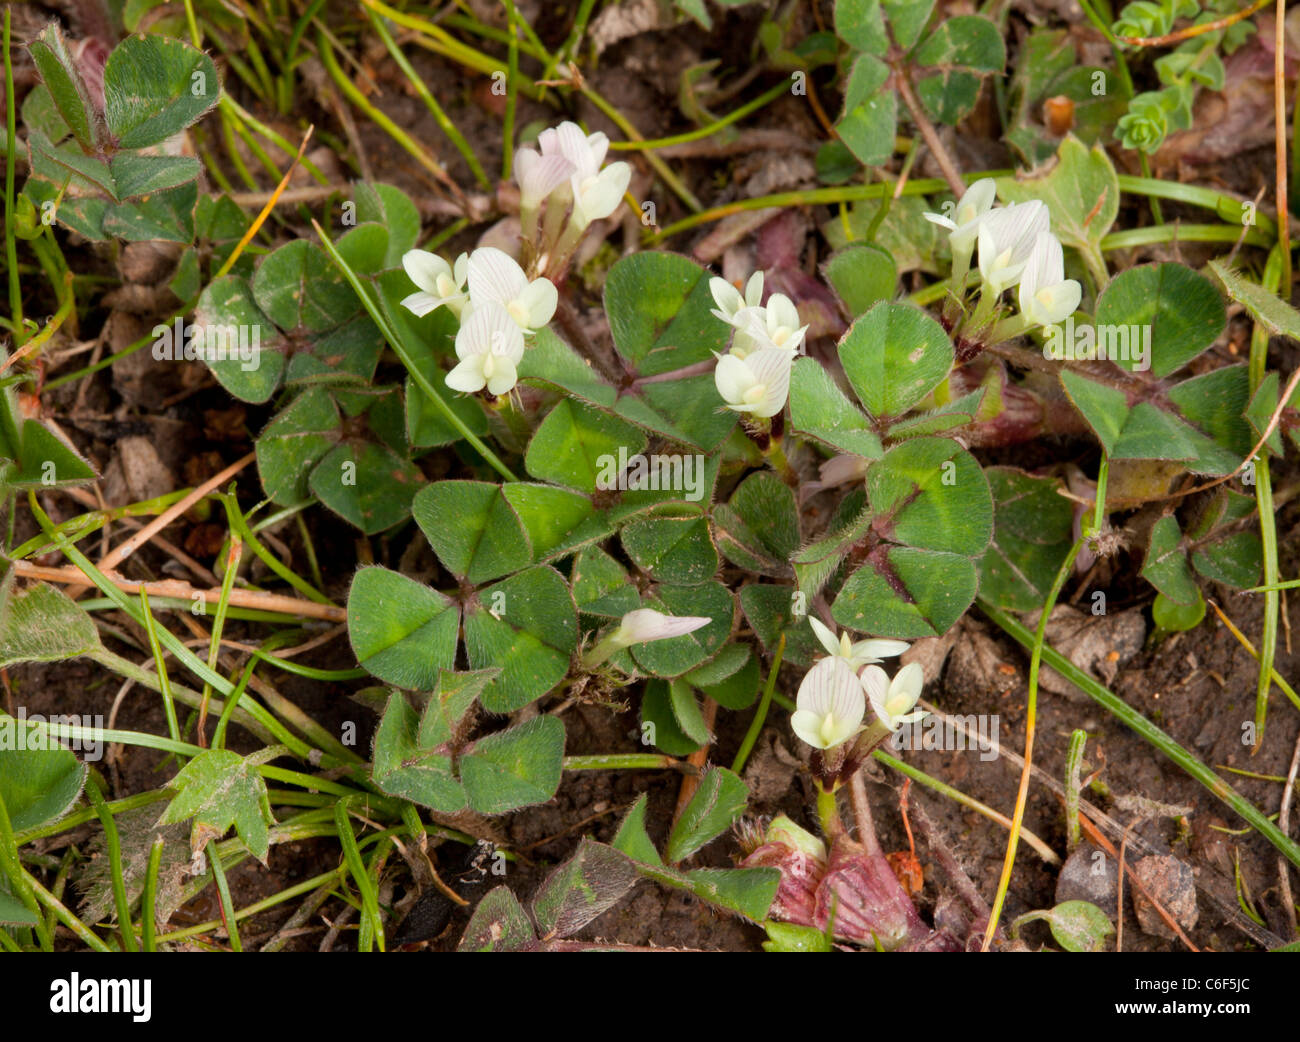 Subterranean Clover, Trifolium subterraneum in flower. Stock Photo